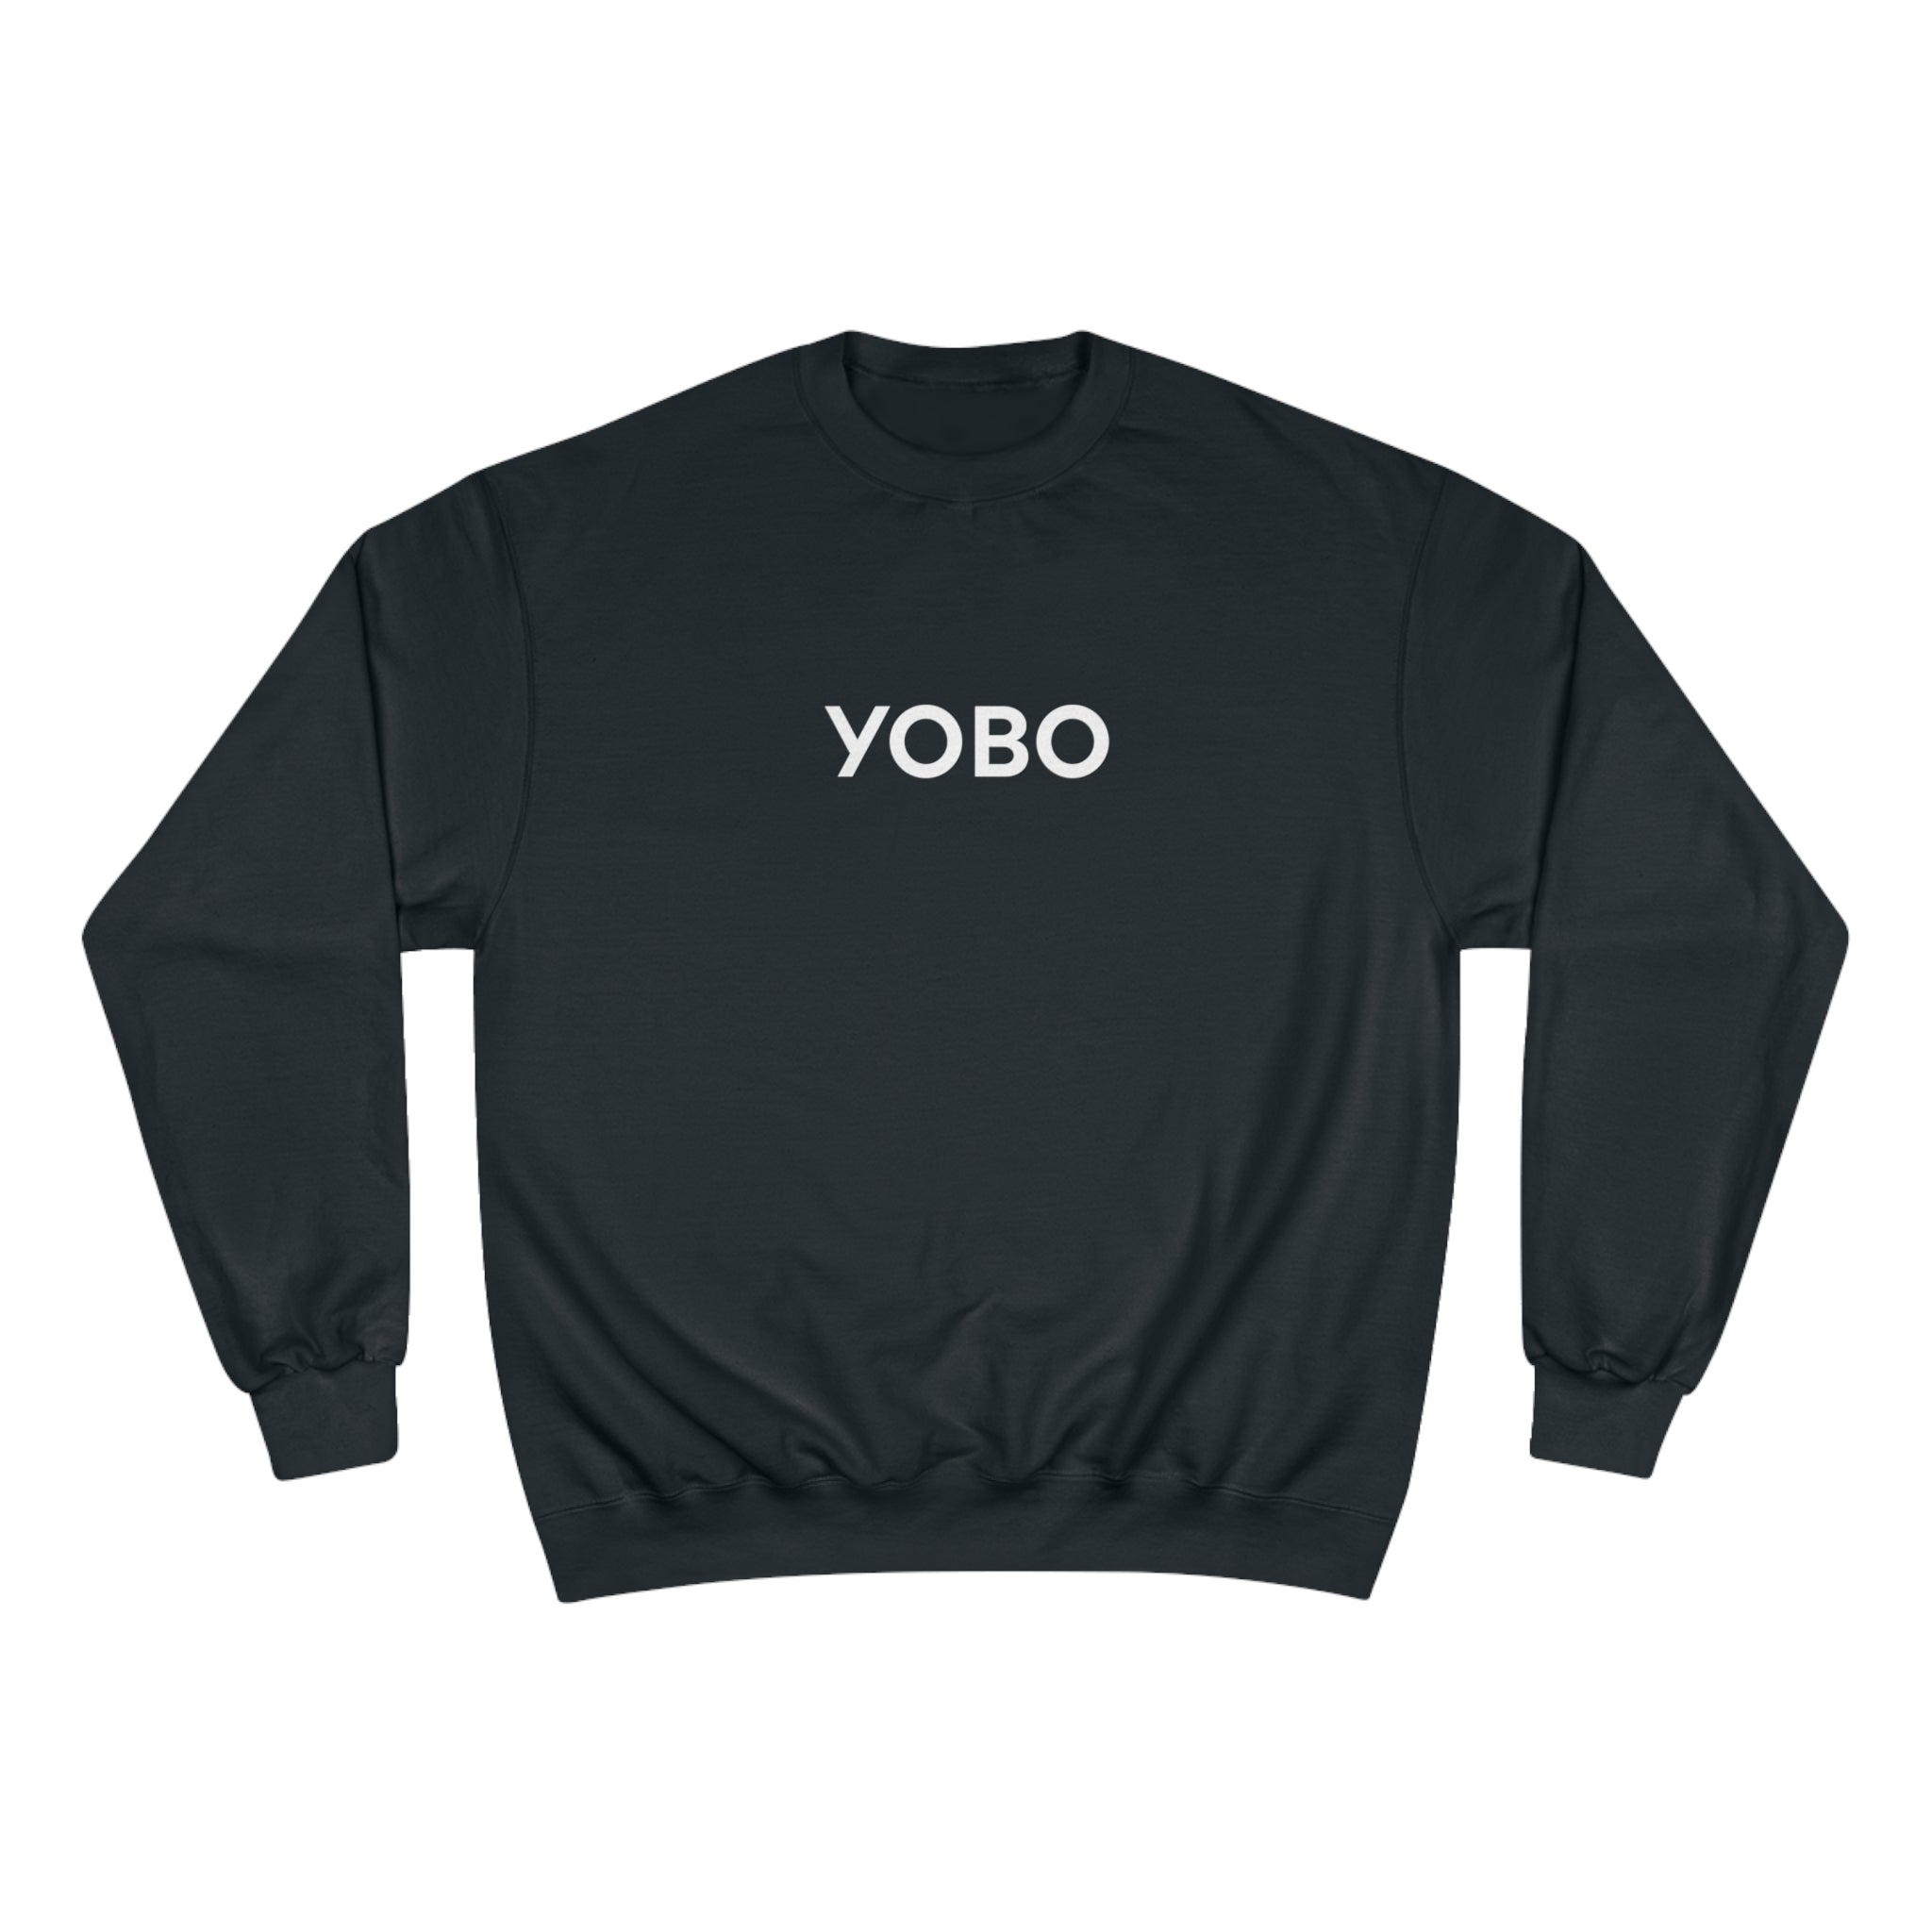 Yobo Champion Sweatshirt